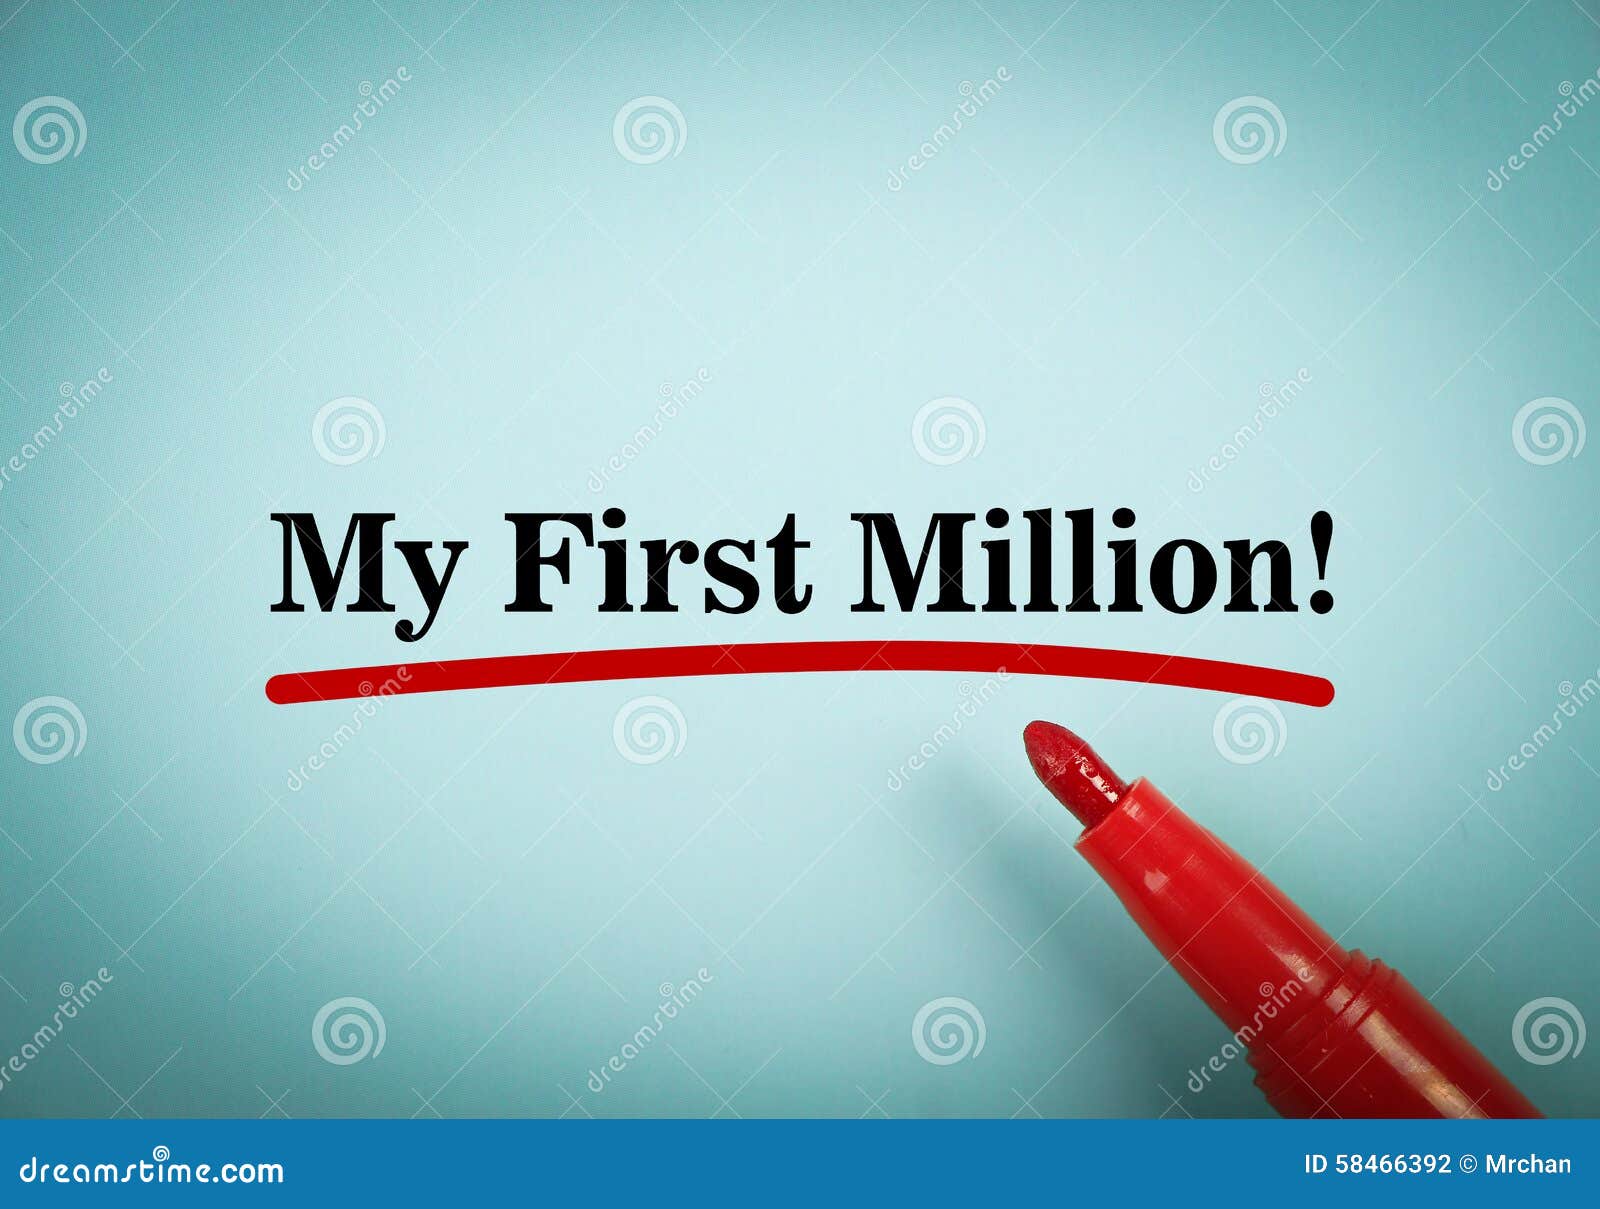 my first million